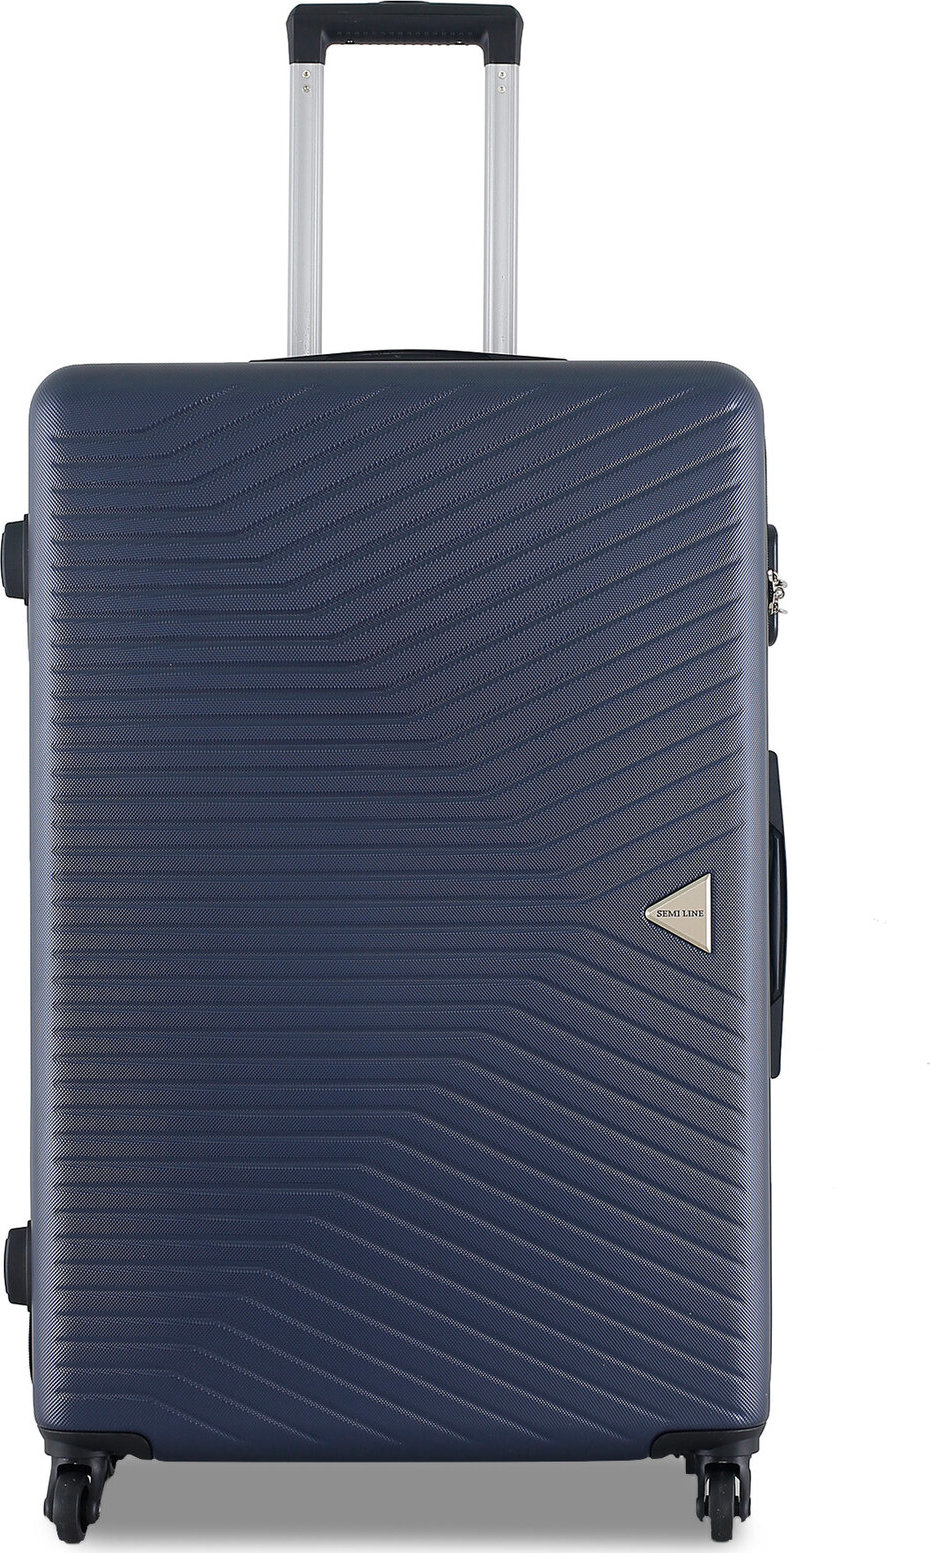 Velký kufr Semi Line T5691-3 Niebiesko/Fioletowy